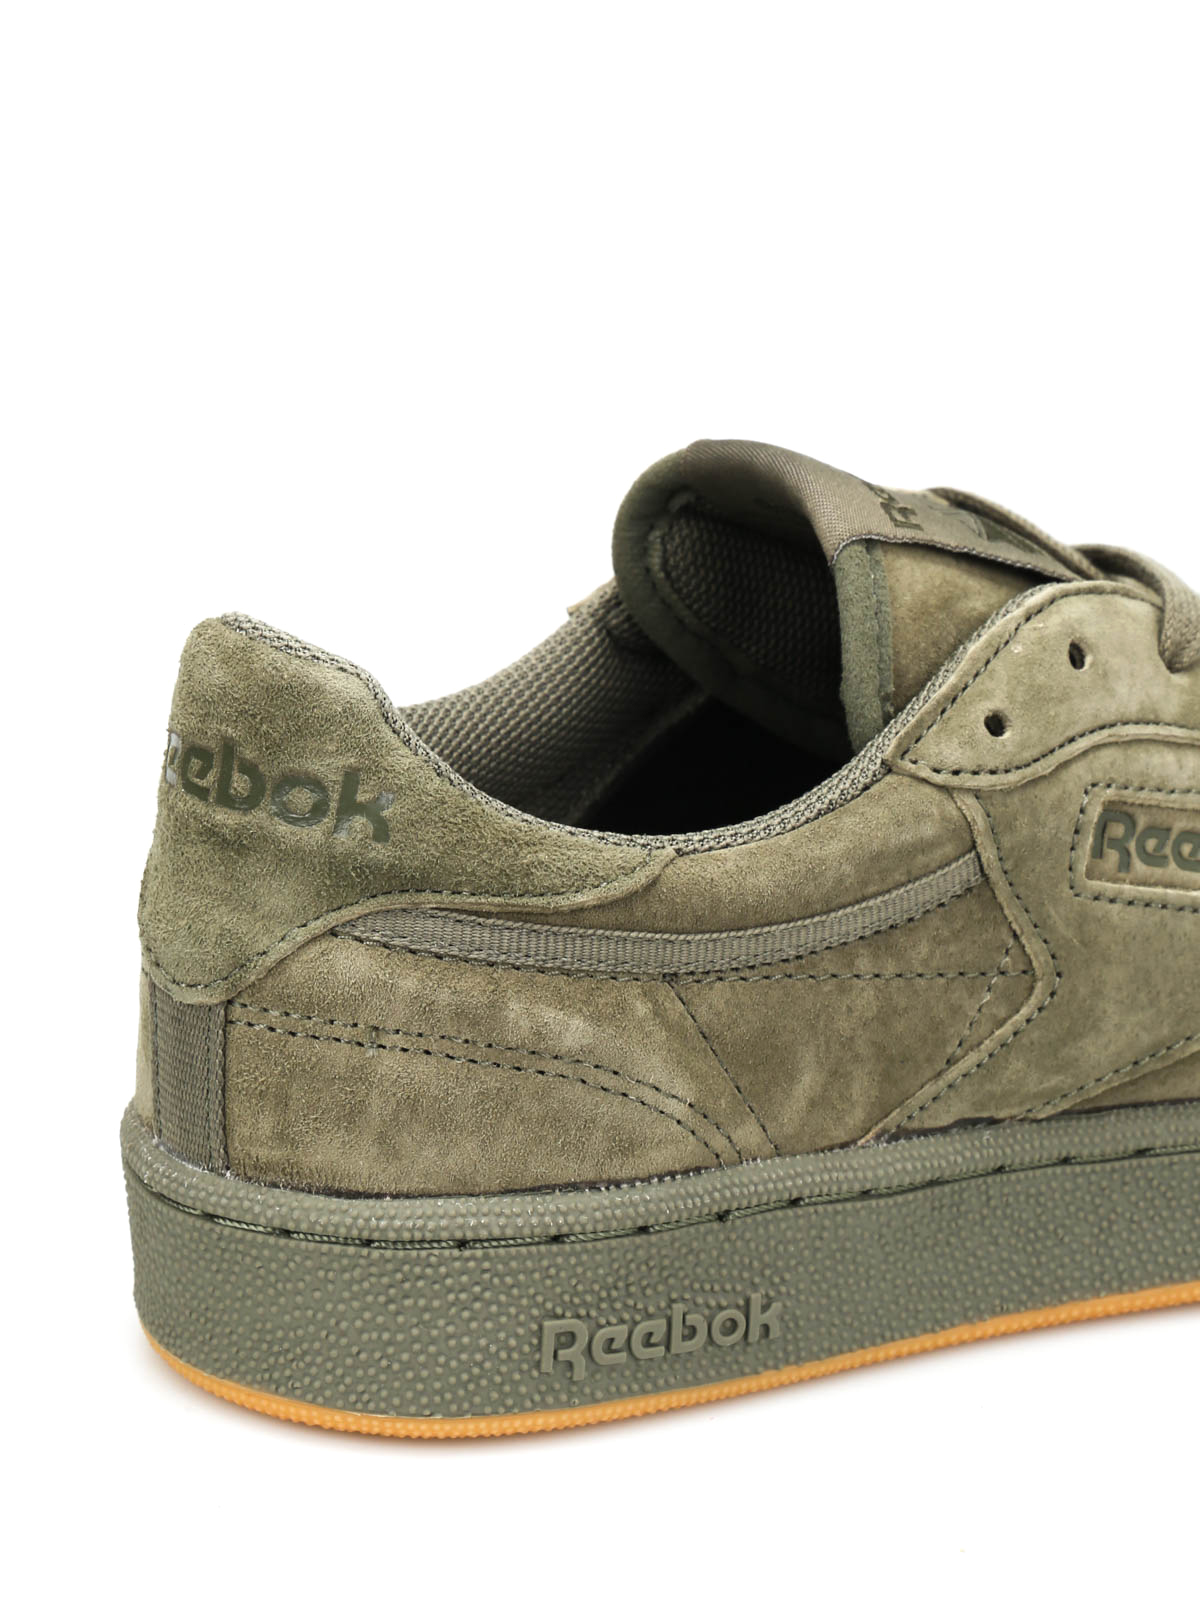 Reebok Club C 85 sneakers - BD4759